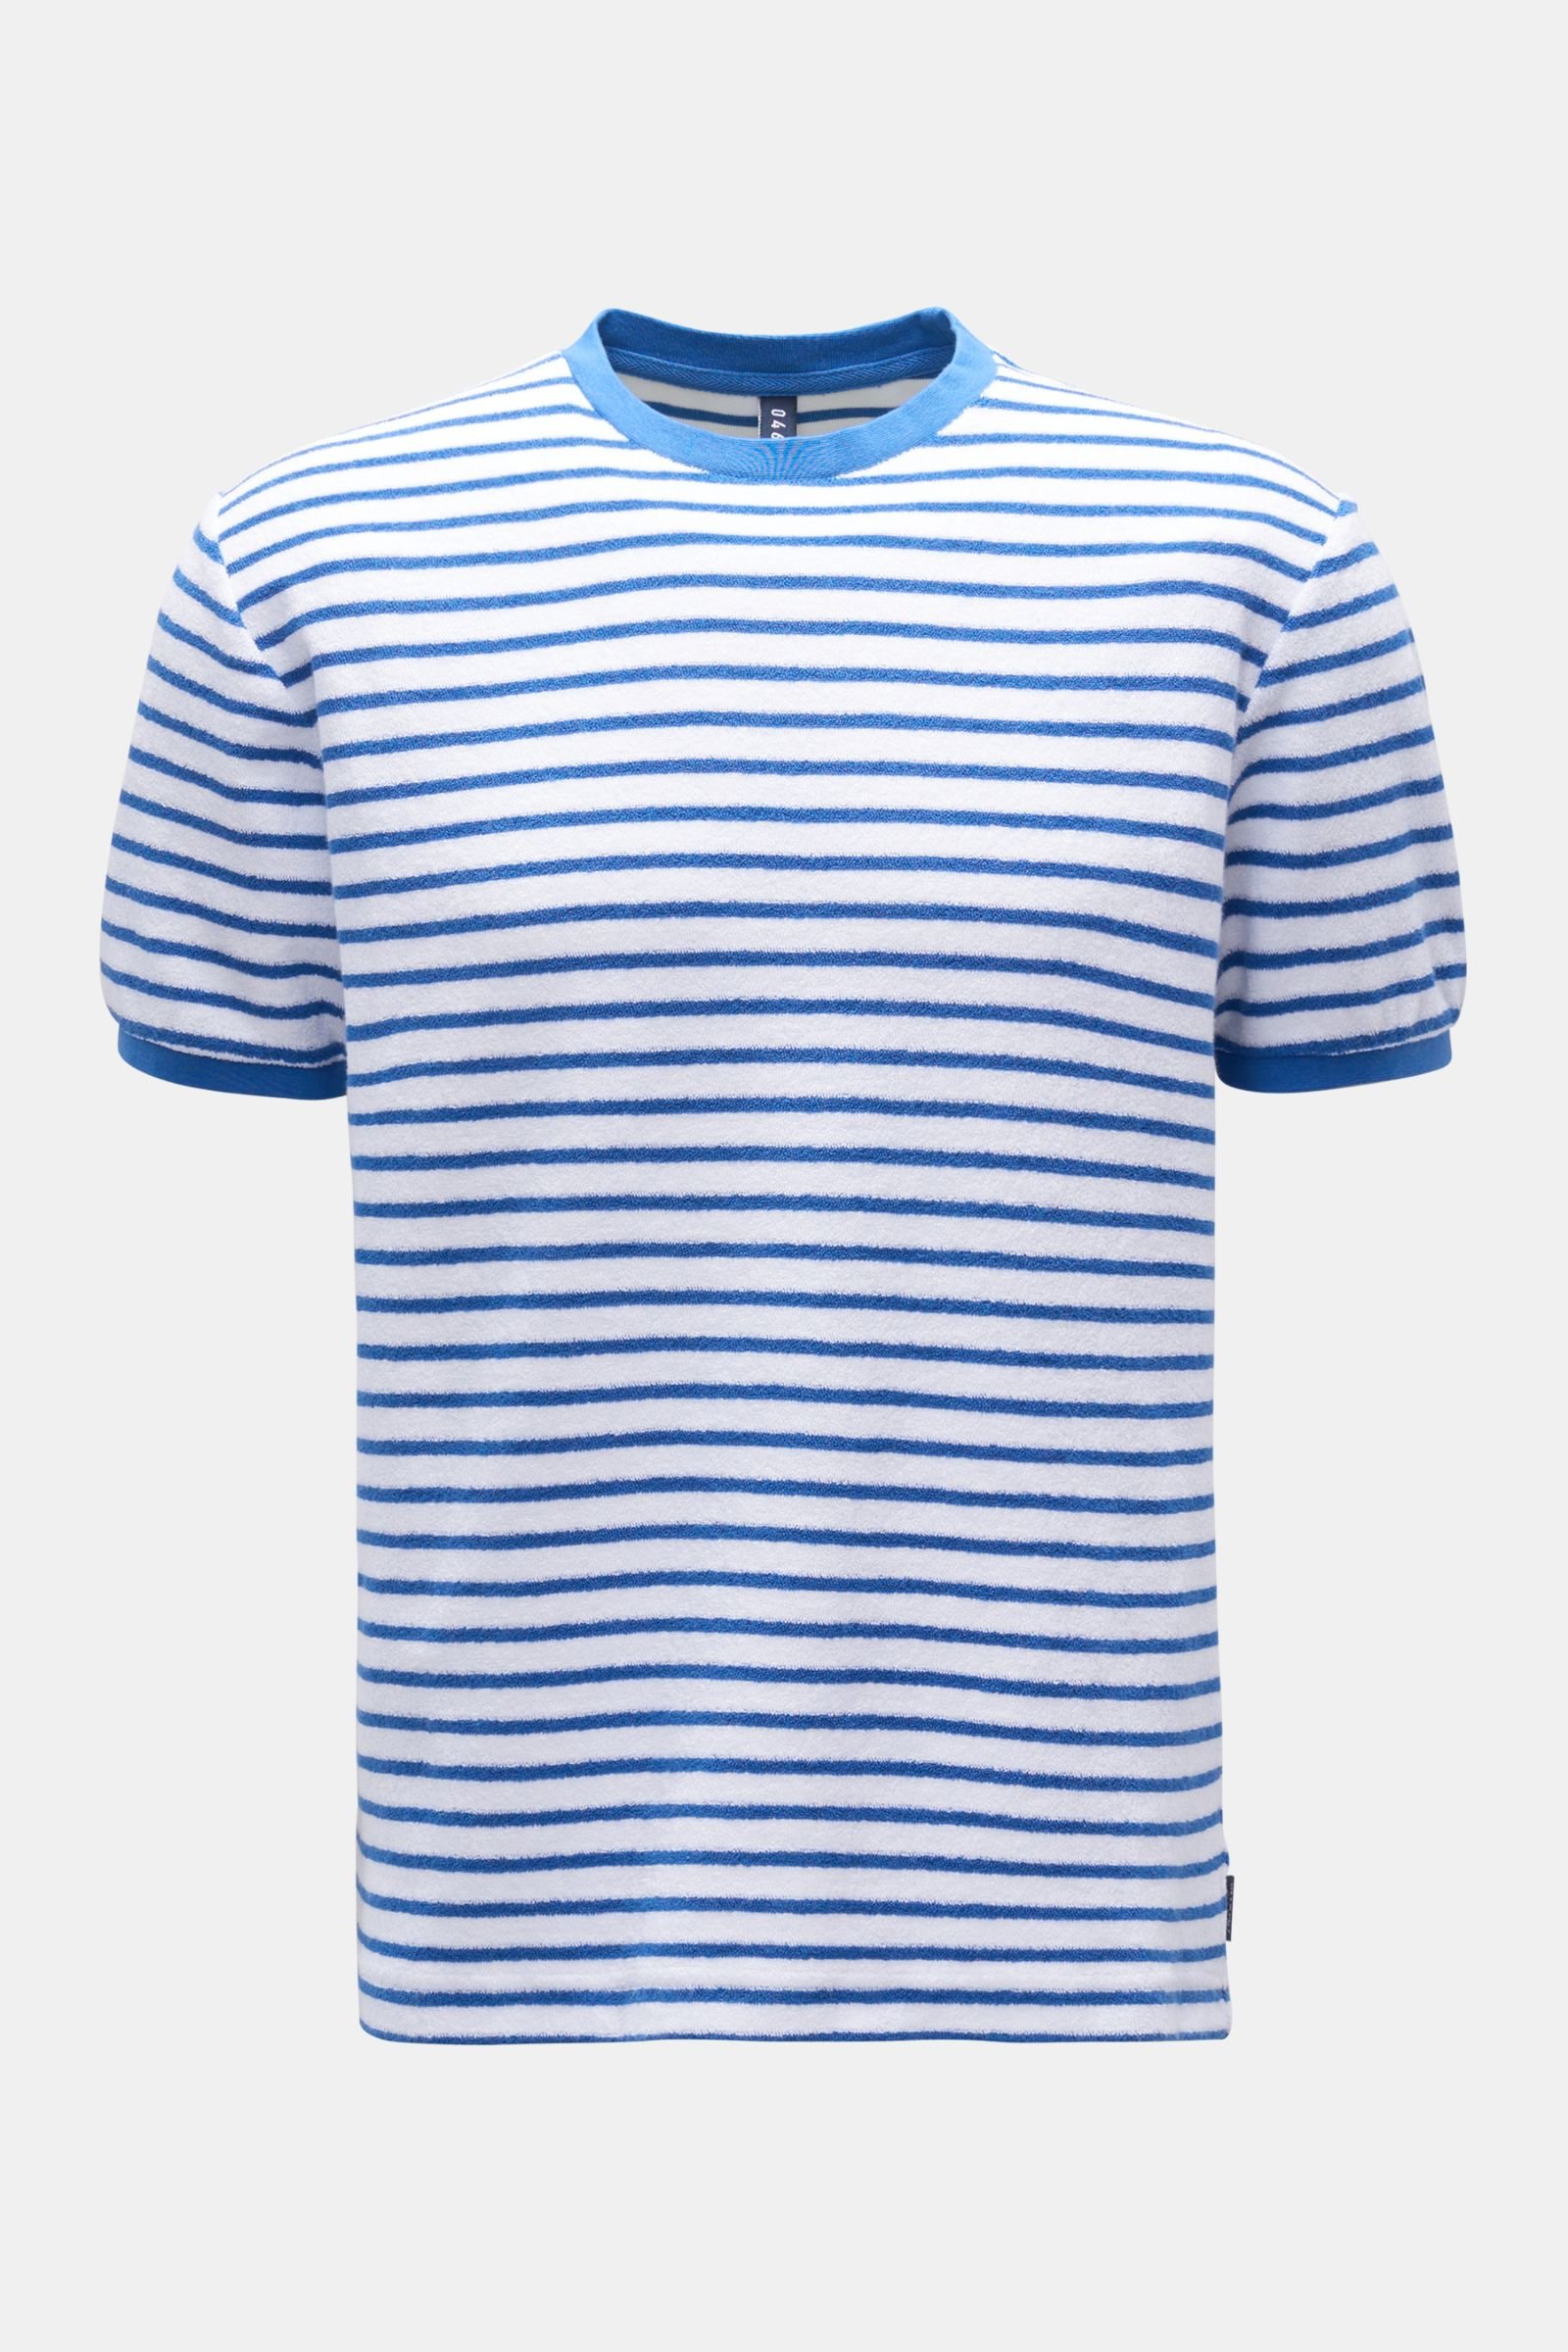 Frottee Rundhals-T-Shirt 'Terry Stripe Tee' blau/weiß gestreift